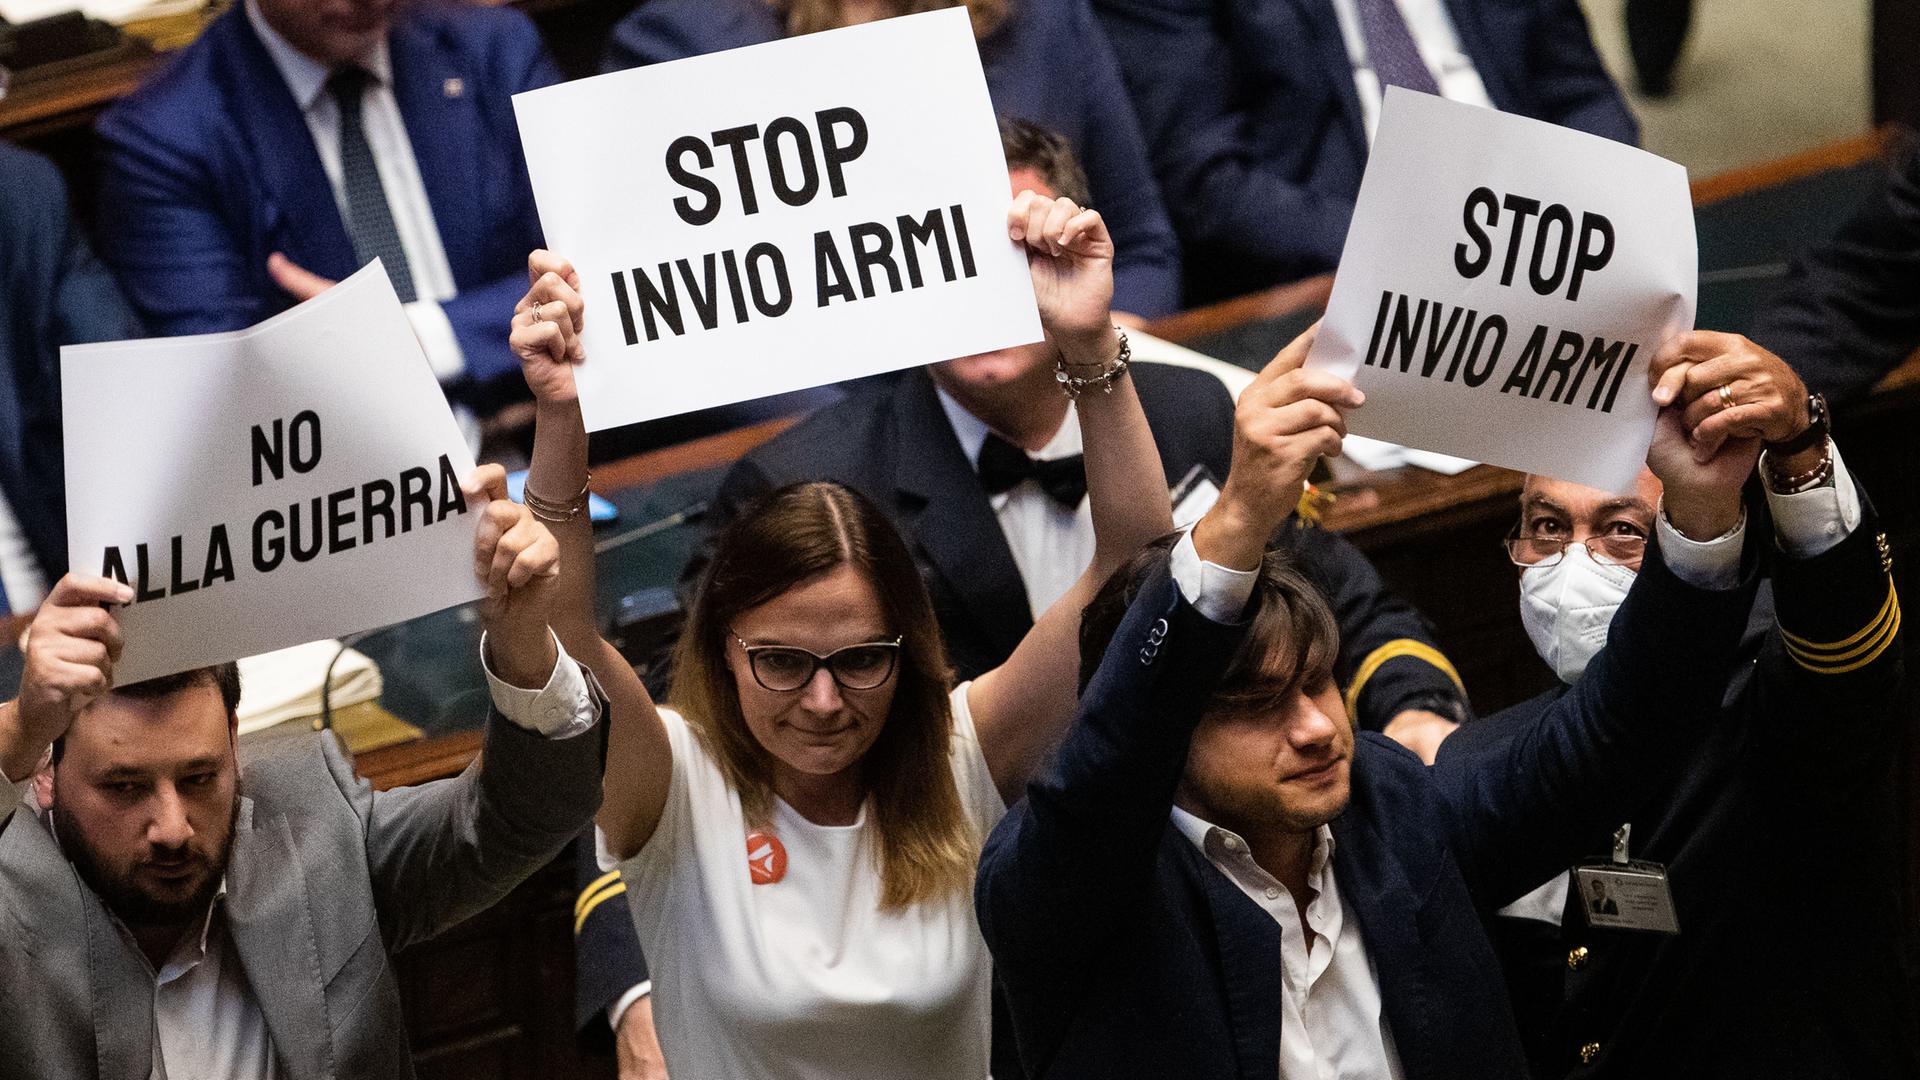 Im italienischen Parlament halten Abgeordnete der Opposition  - zwei Männer und eine Frau - weiße Plakate mit schwarzer Schrift hoch, die sich inhaltlich gegen Waffenlieferungen in die Ukraine und gegen den Krieg richten: "No Alla Guerra" und "Stop Invio Armi" lauten die Schriftzüge auf den Plakaten.